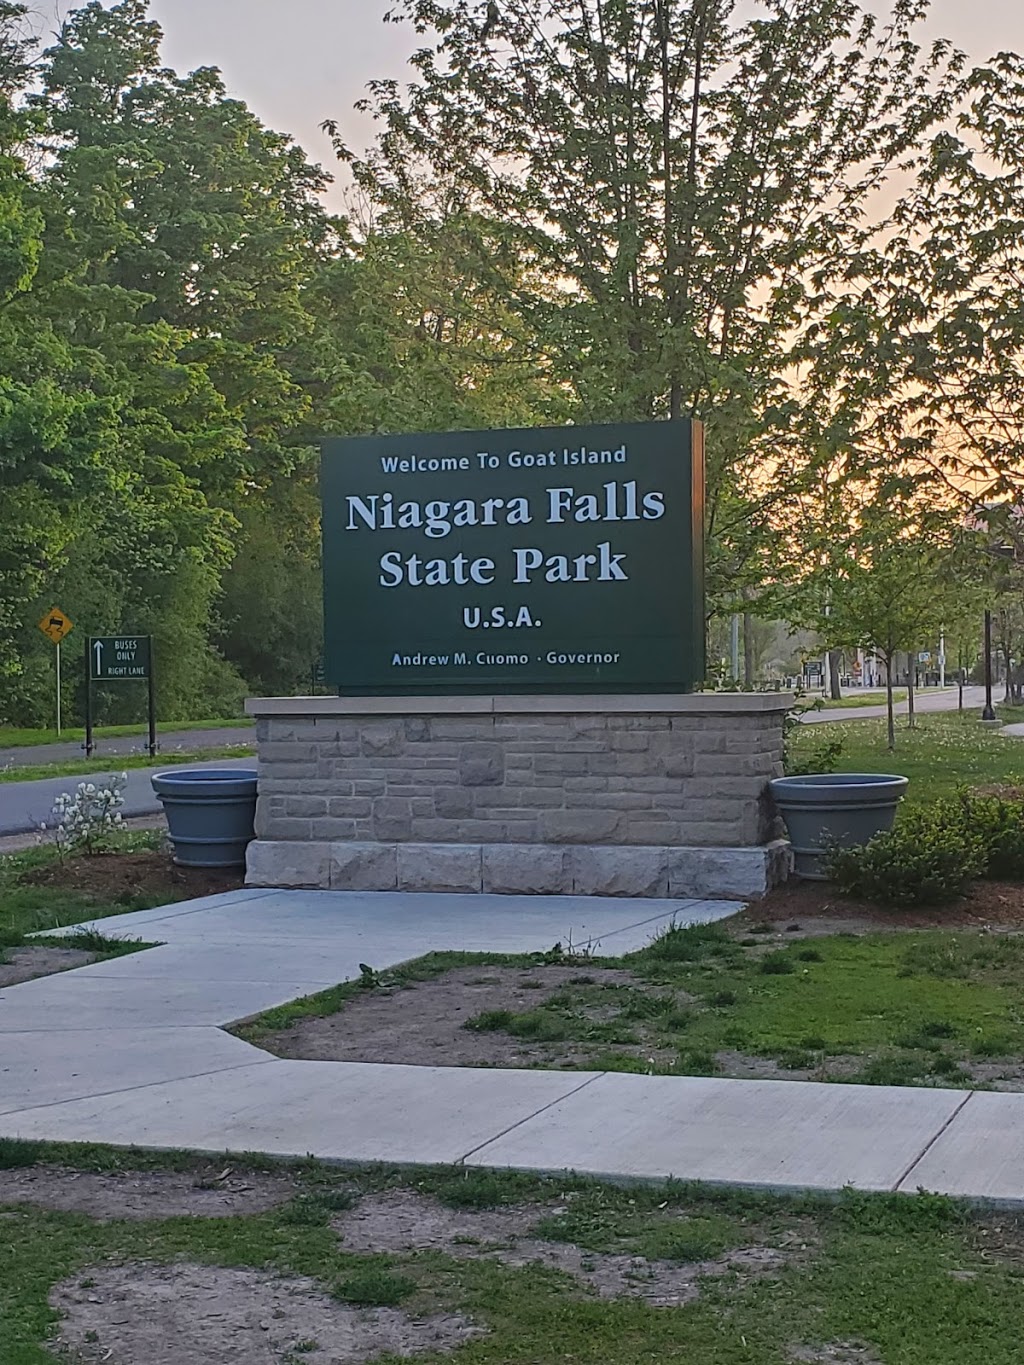 Niagara Falls, NY, USA | Niagara Falls, NY 14303, USA | Phone: (716) 286-8579